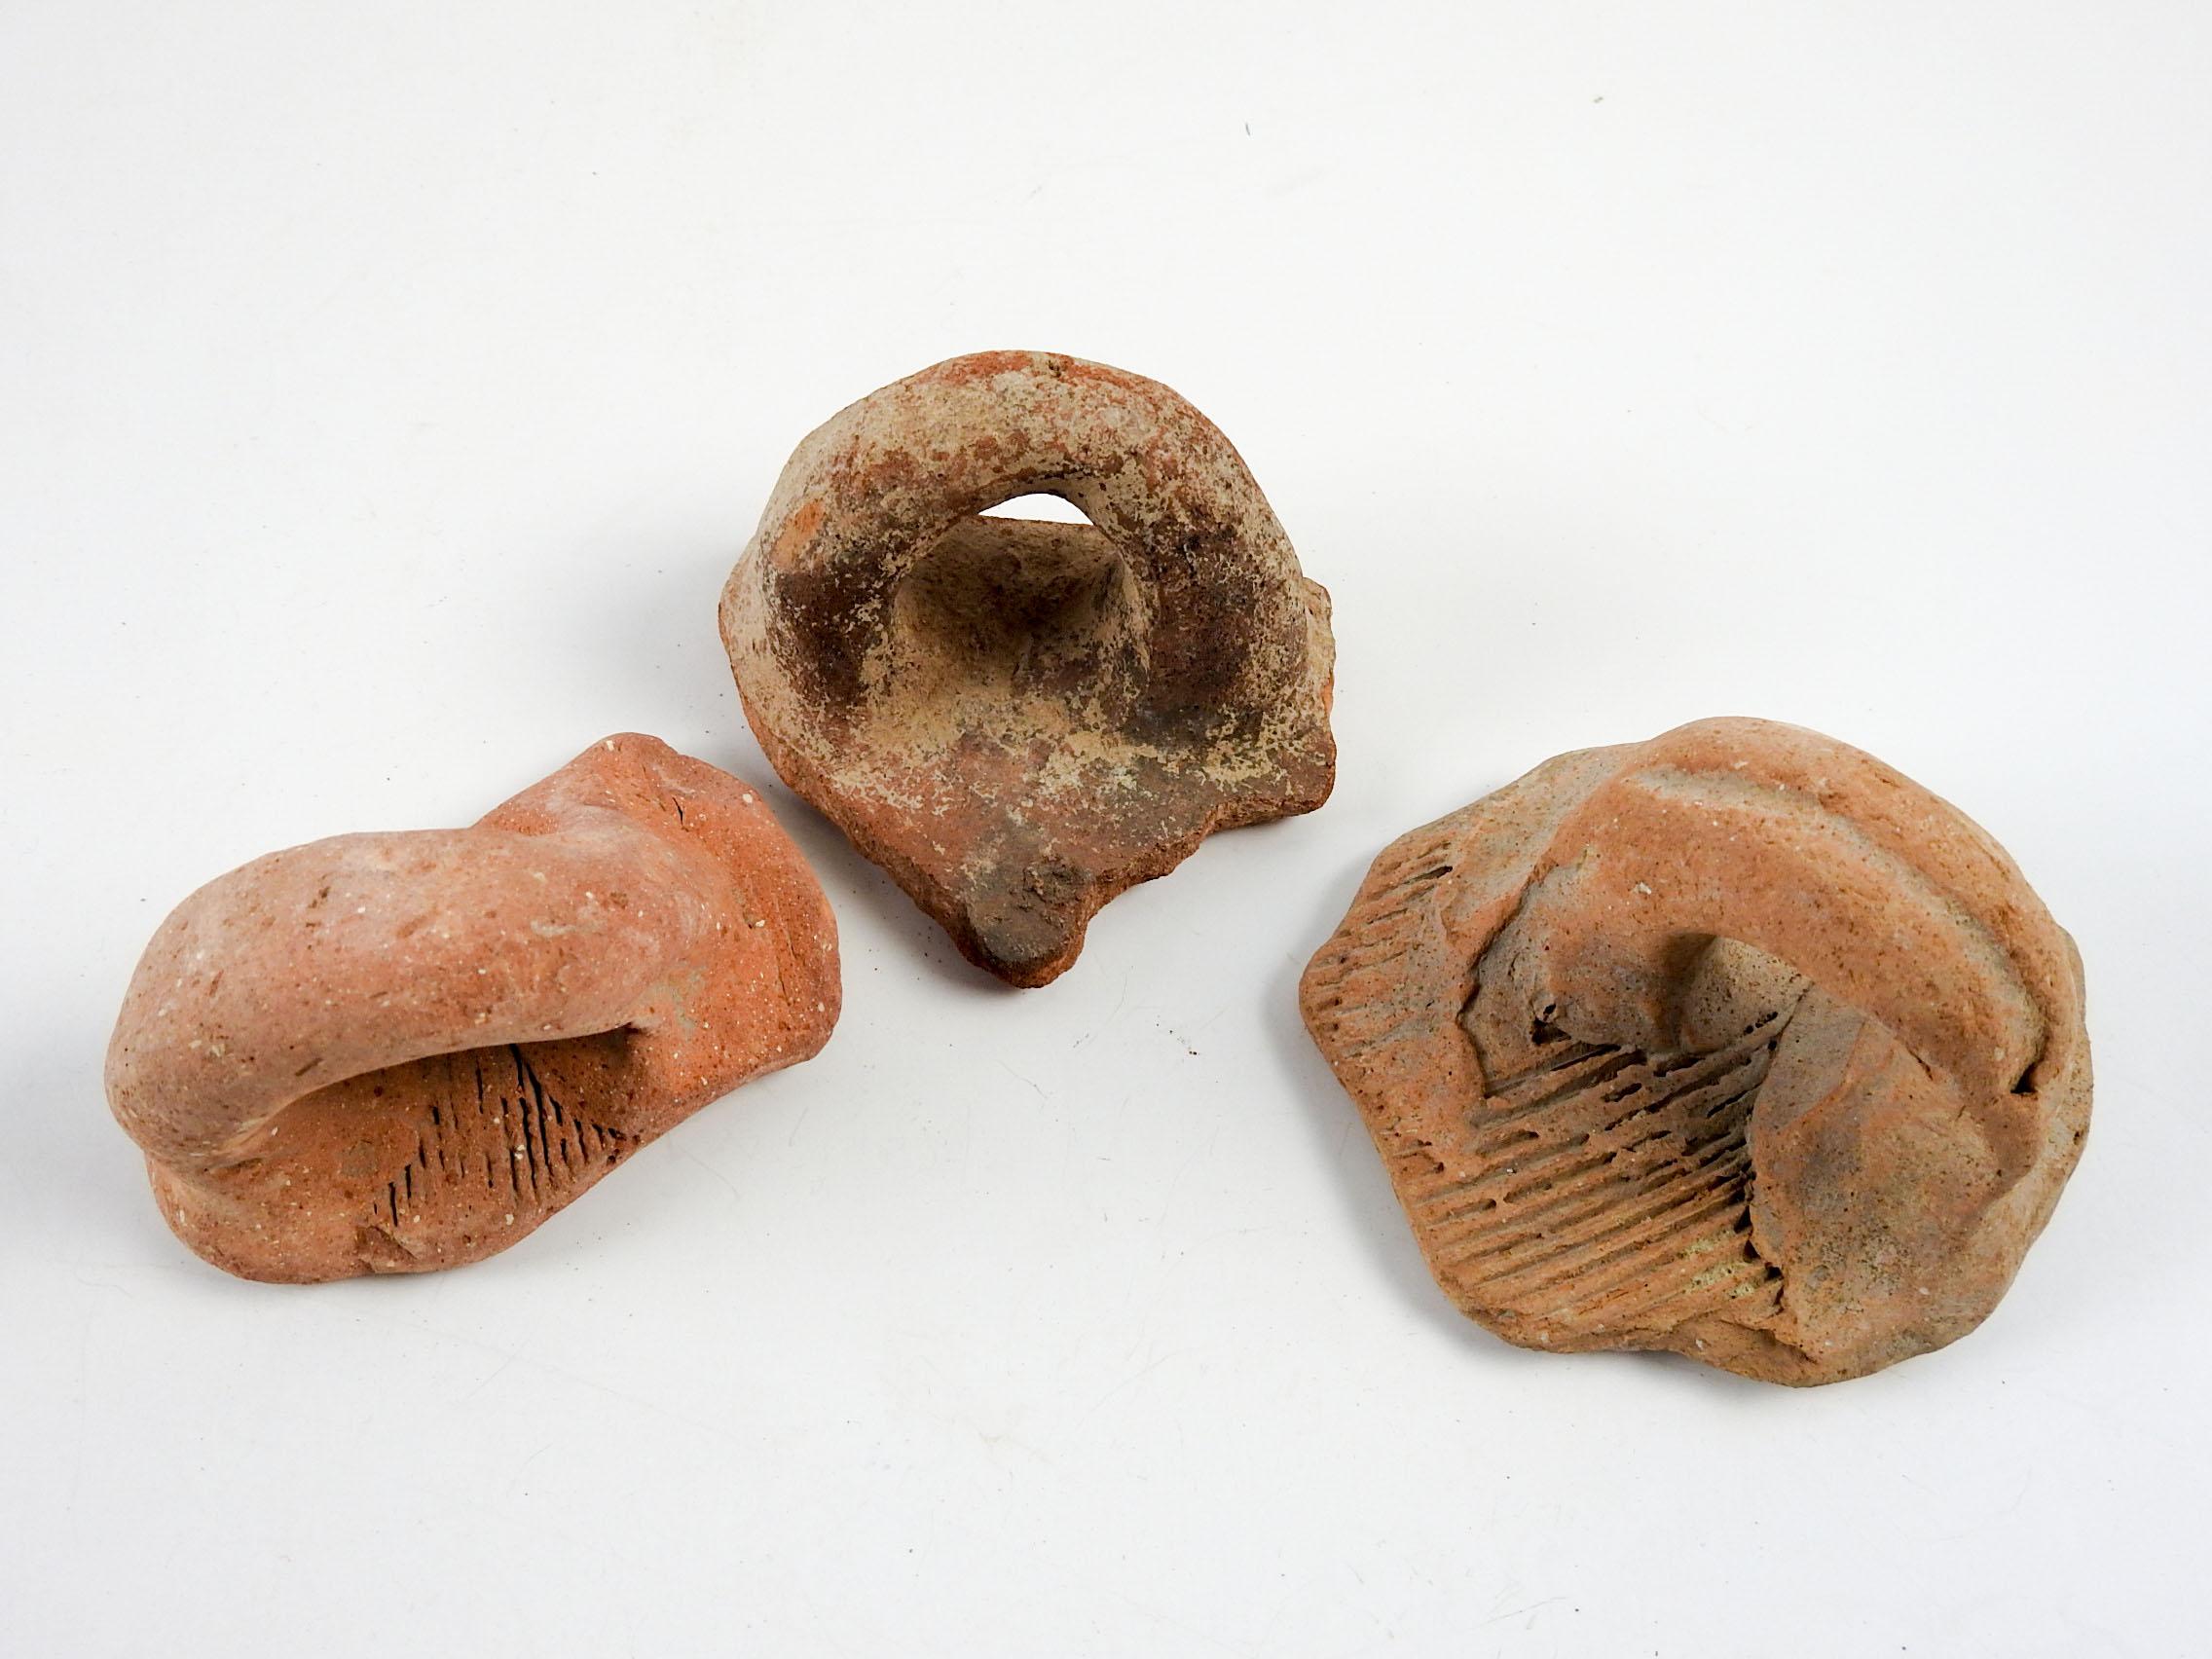 Groupe de 3 fragments d'anses de poterie en terre cuite de la Méditerranée antique . J'en ai plusieurs ensembles, les couleurs varient de brunâtre à rougeâtre, la taille et l'usure générale varient. Chaque fragment mesure environ 3 